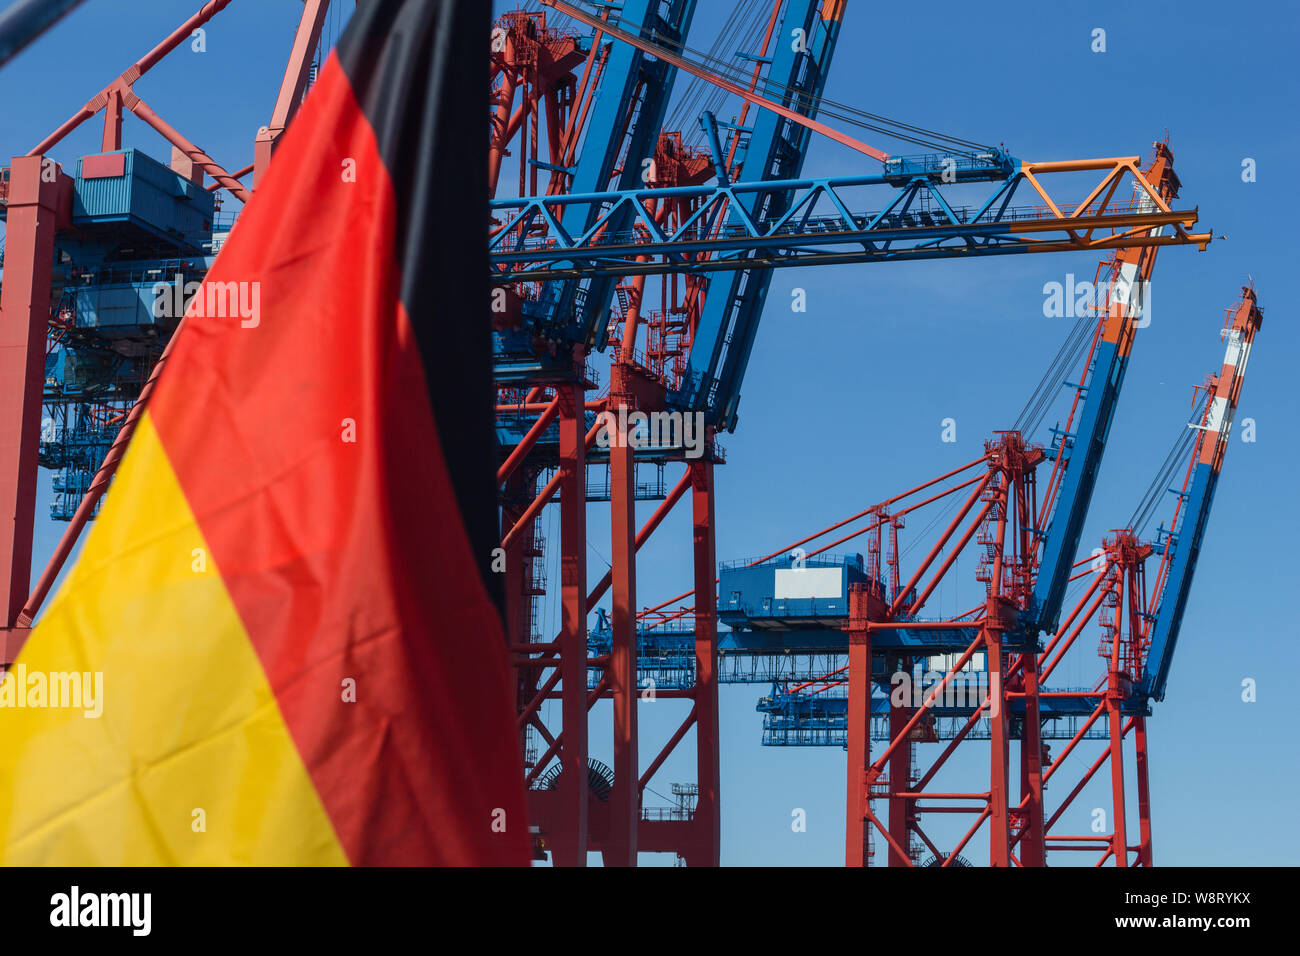 En la terminal de contenedores de un buque portacontenedores de bandera alemana economía de libre comercio de exportación contenedor grúa pórtico campeón mundial de exportación Foto de stock